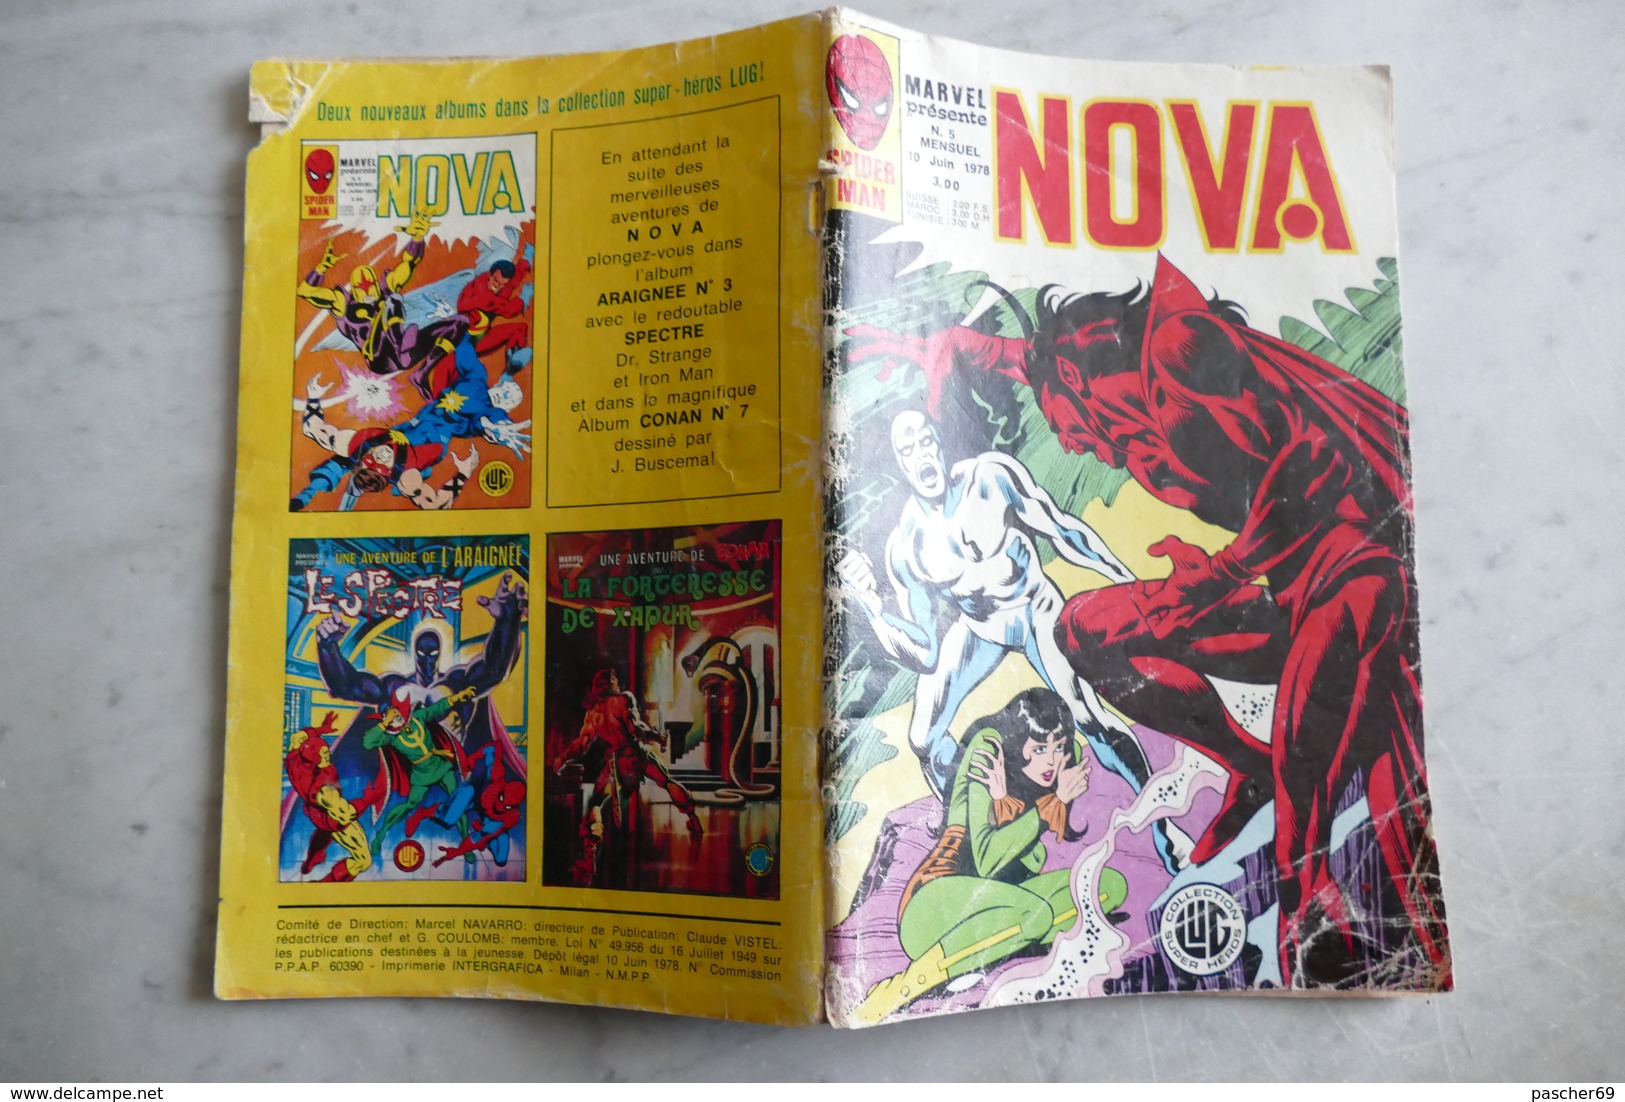 Marvel Présente NOVA N°5 Mensuel Du 10 Juin 1978  / LK 14 - Nova